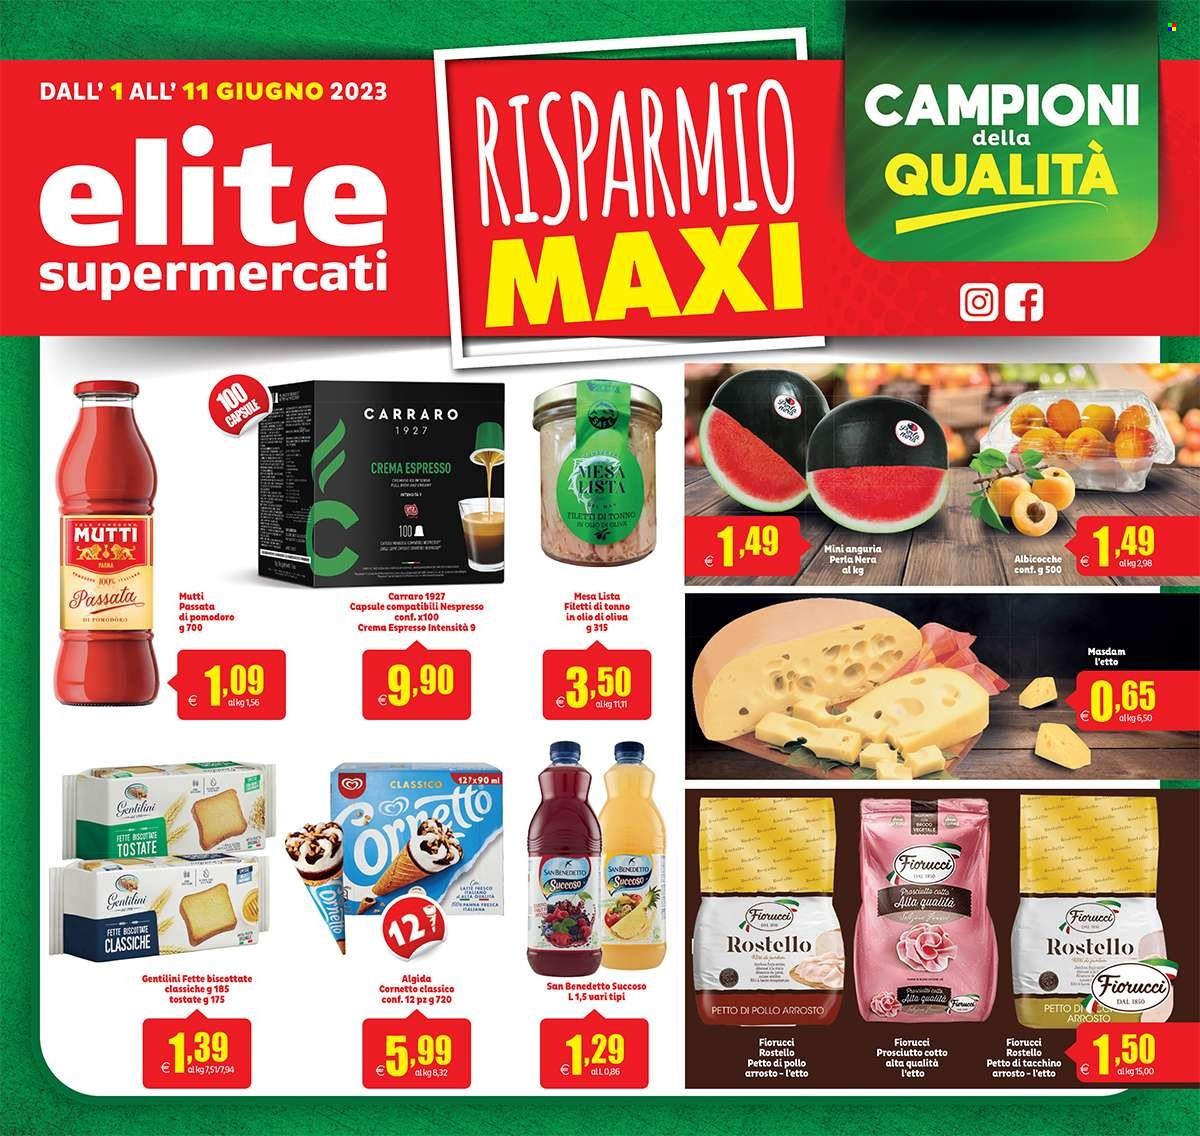 Volantino Elite Supermercati - 1.6.2023 - 11.6.2023.